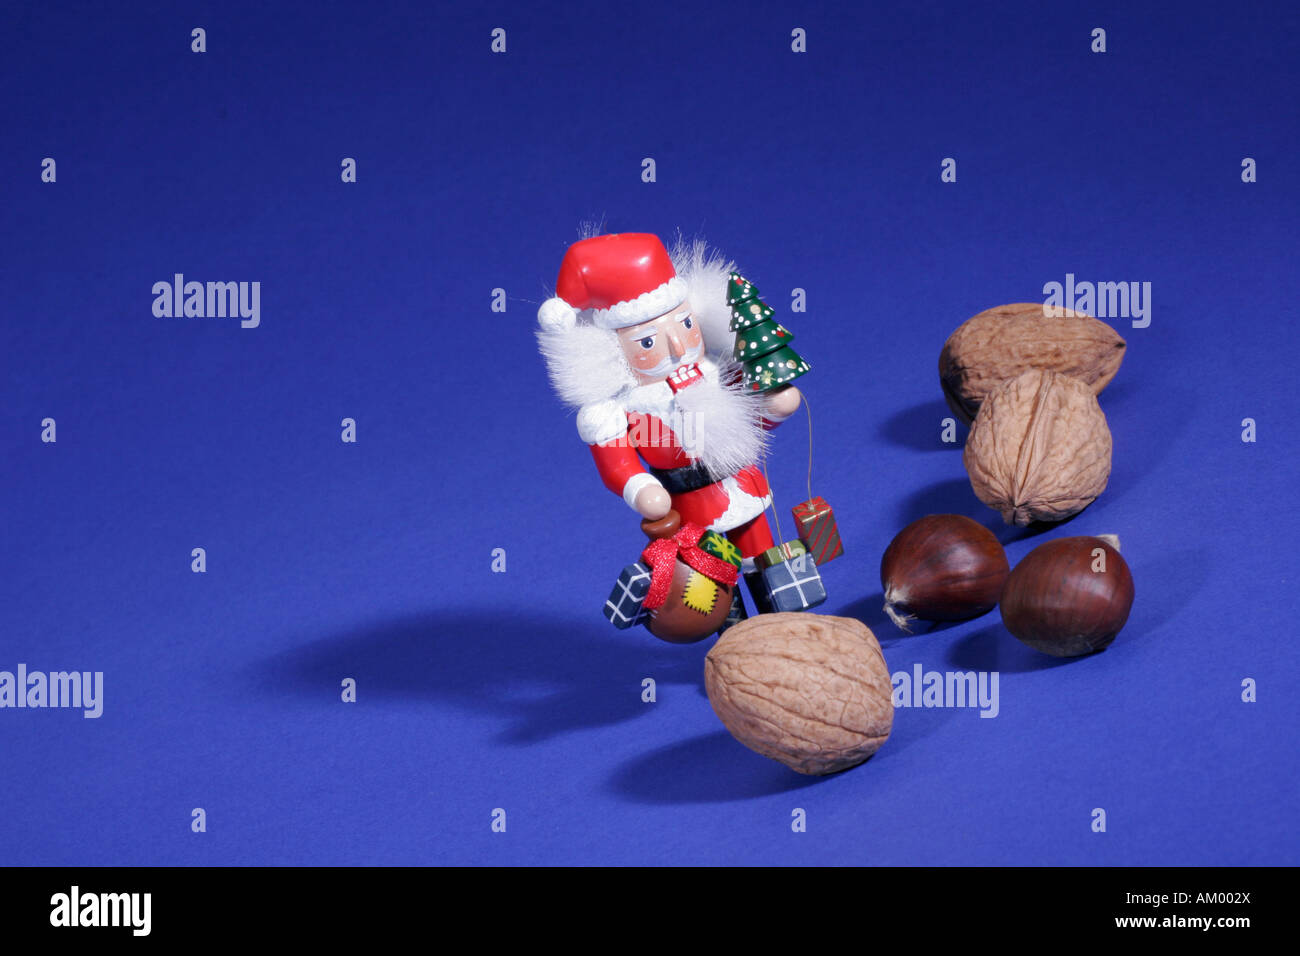 Santa Claus between nuts Stock Photo